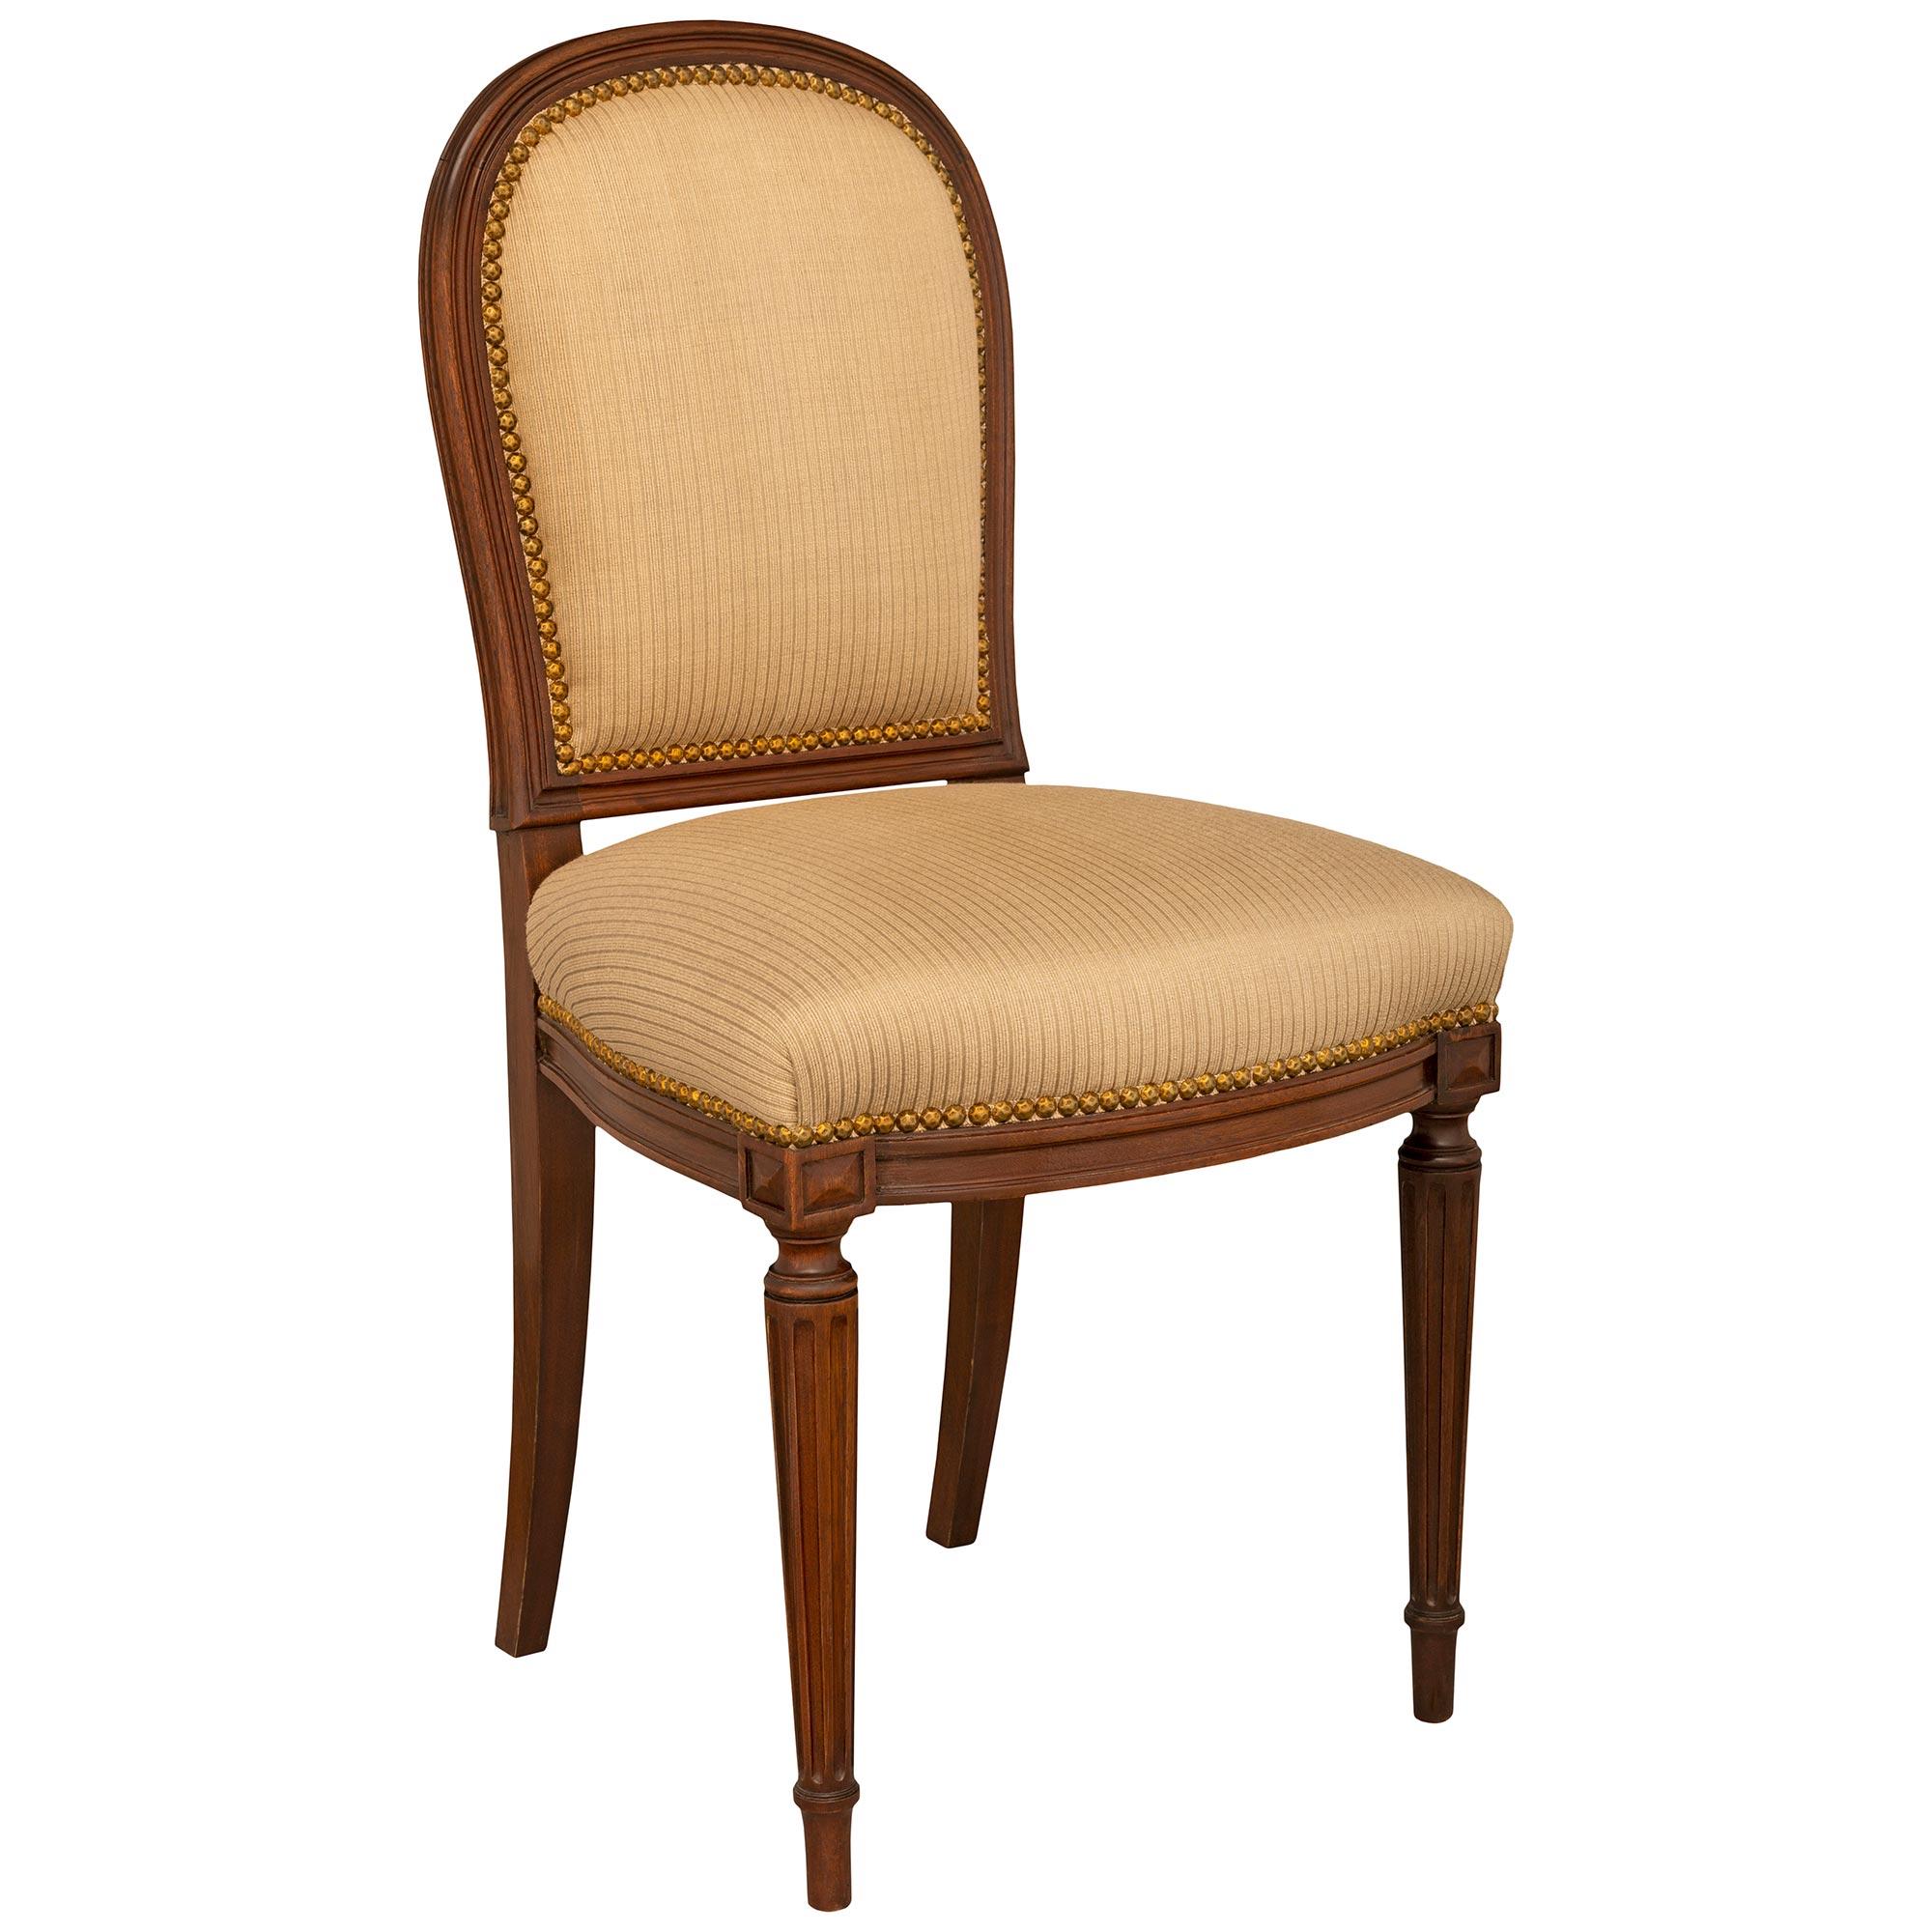 Ein Satz von acht französischen Beistellstühlen aus massivem Mahagoni des späten 19. Jahrhunderts. Die Garnitur wird von eleganten, konisch zulaufenden, kannelierten Beinen getragen. Darüber befindet sich ein profilierter Fries, der sich auf der